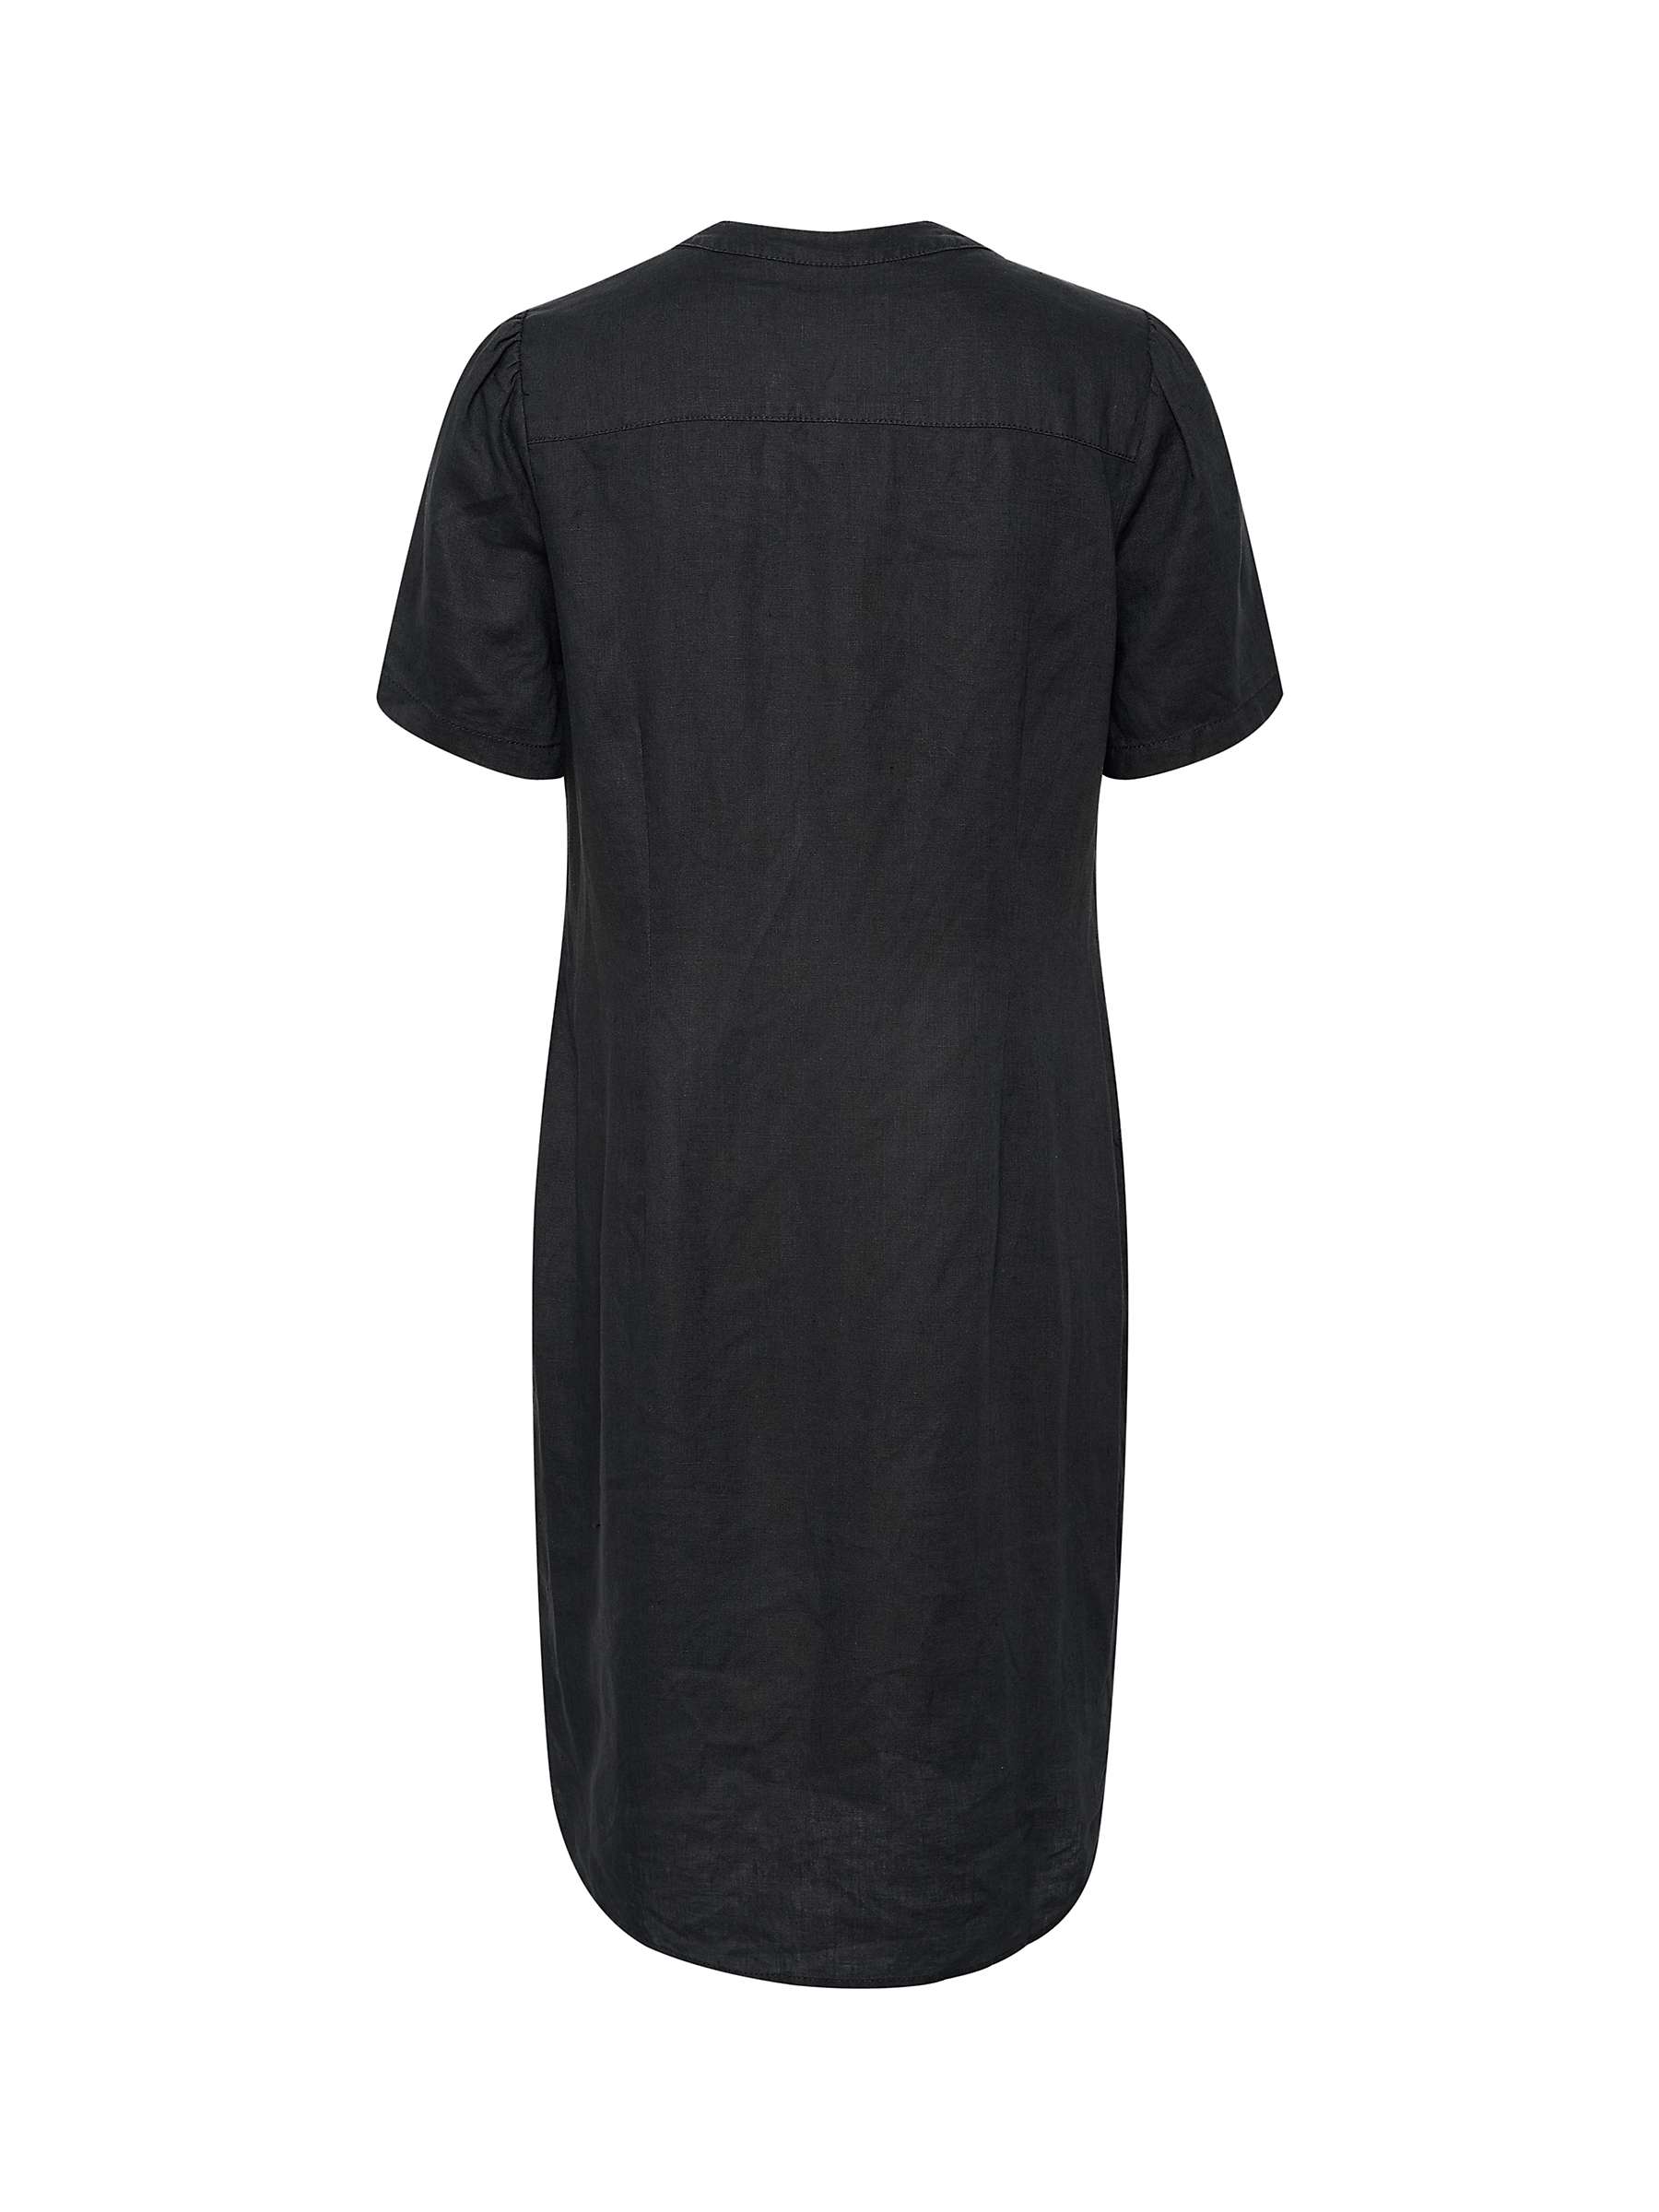 Buy Part Two Aminase Short Sleeve Linen V-Neck Dress Online at johnlewis.com